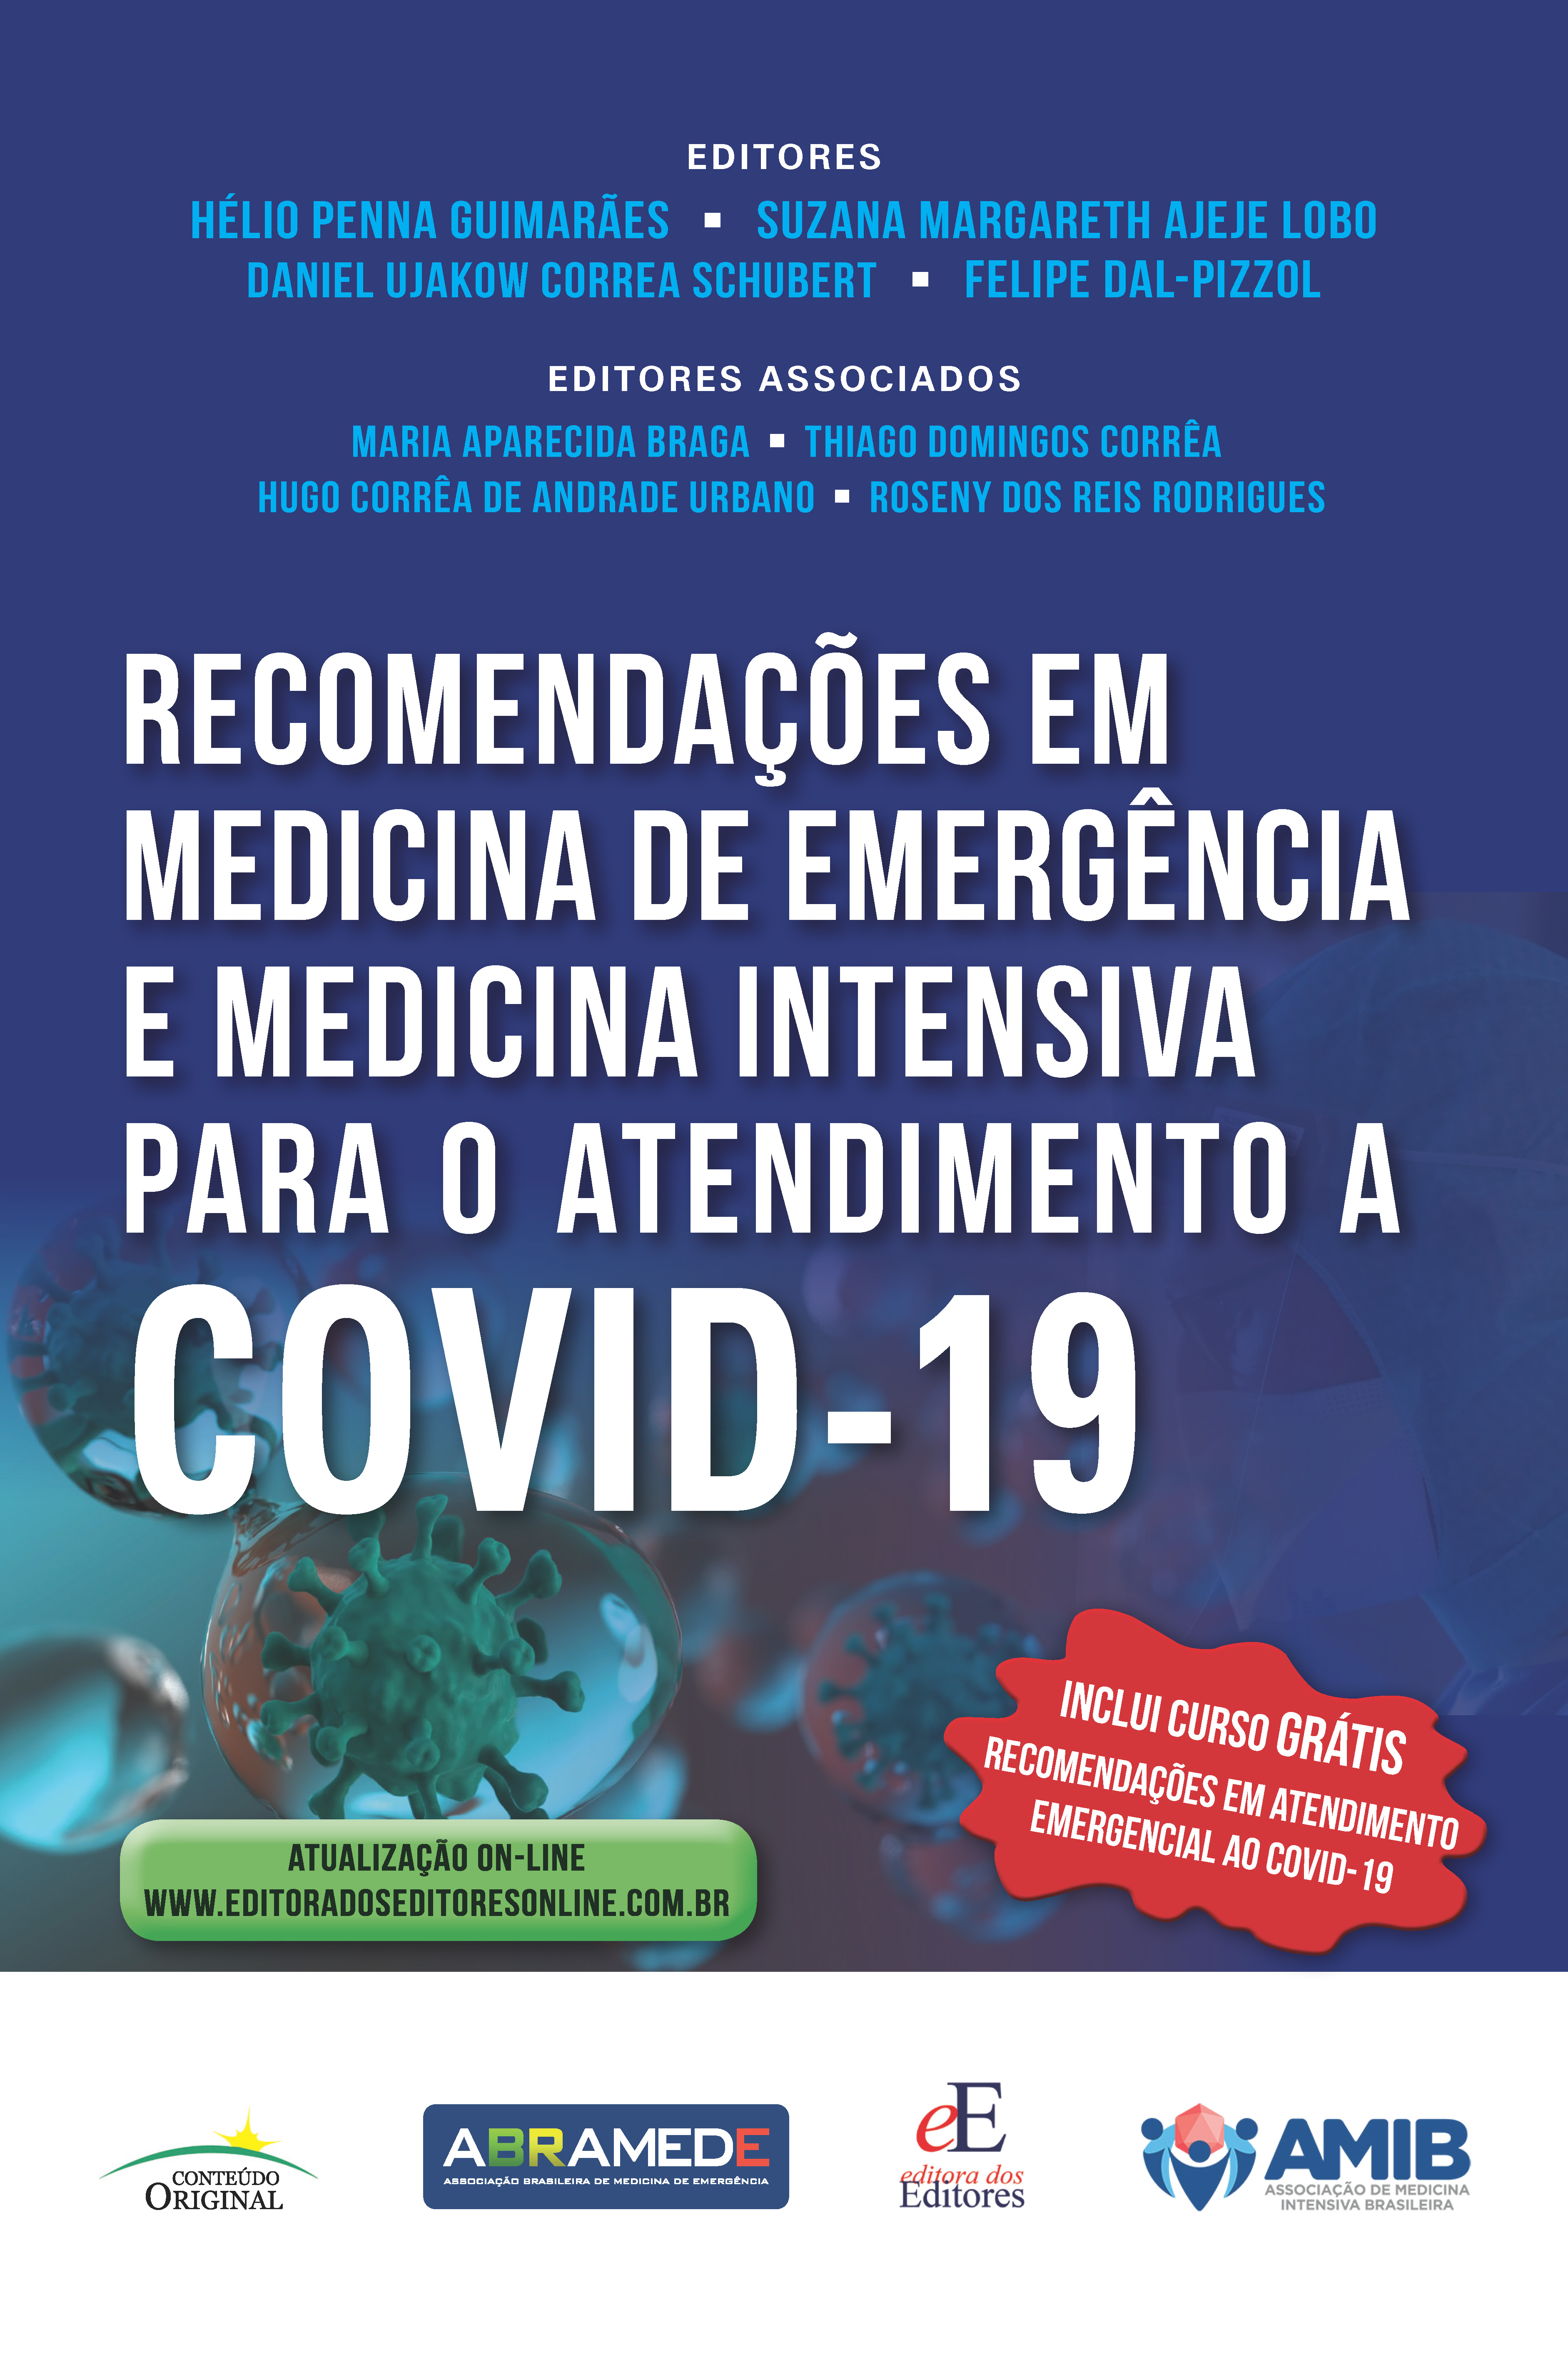 Recomendações em Medicina de Emergência para Atendimento ao COVID-19